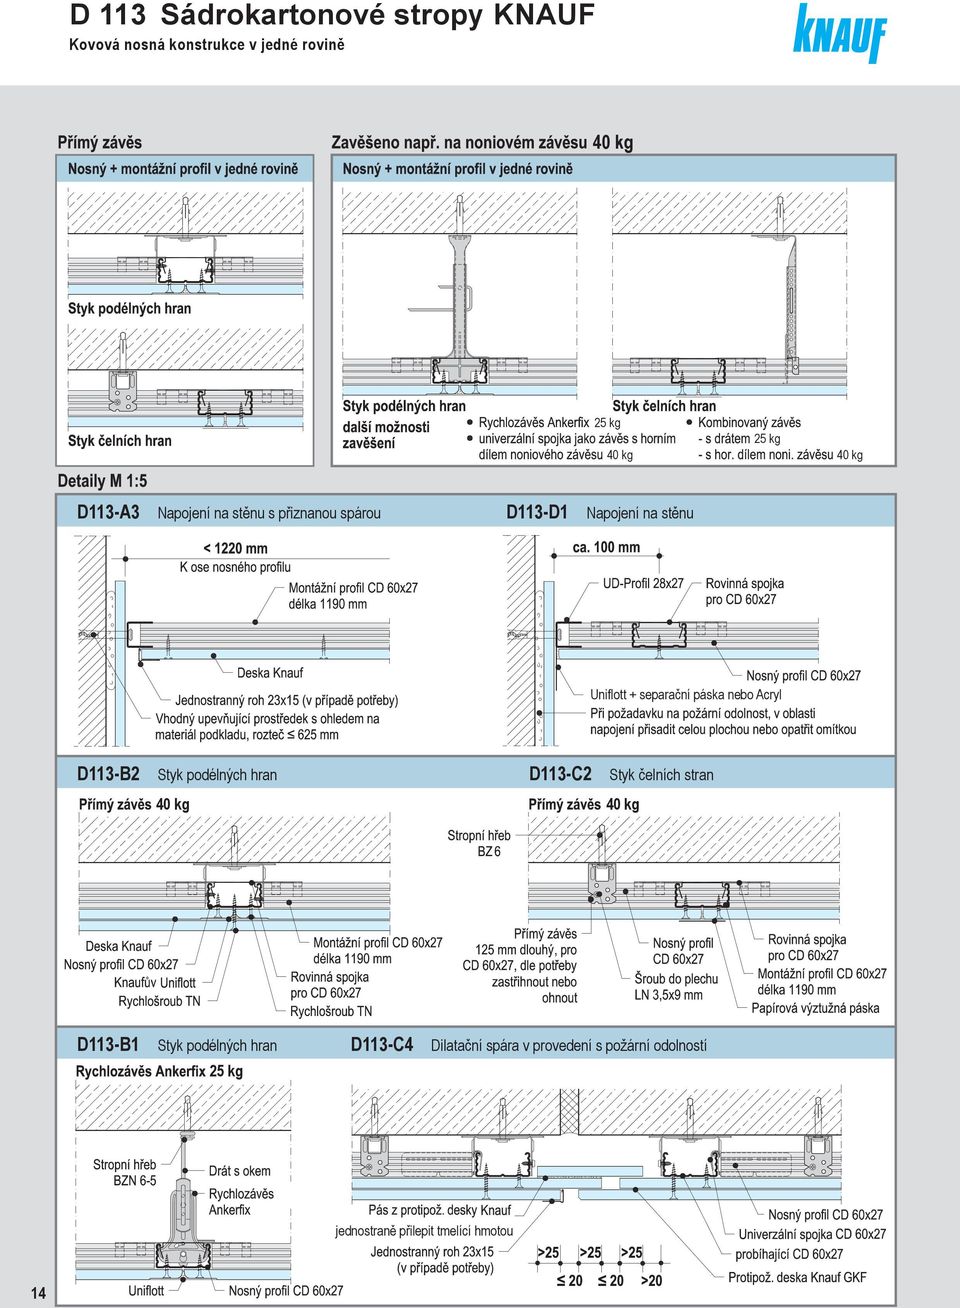 D 11 Sádrokartonové stropy Knauf - PDF Stažení zdarma